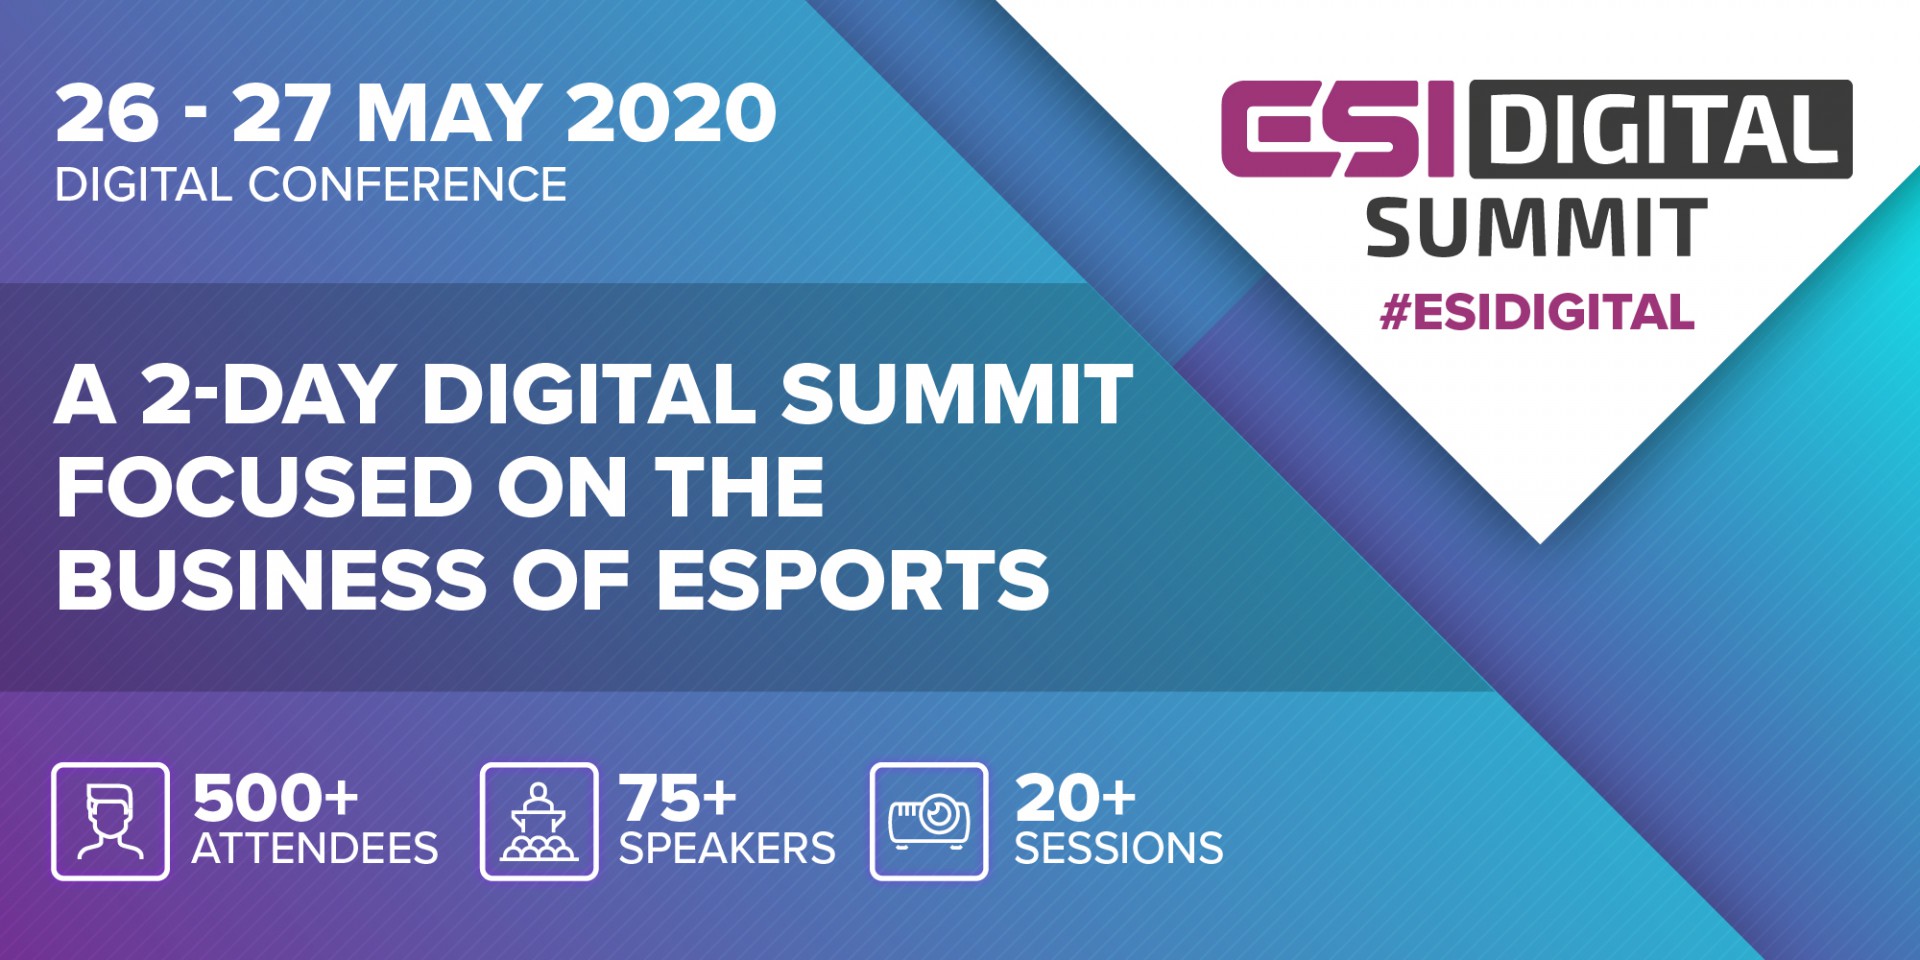 ESI Digital Summit 2020 Announcement